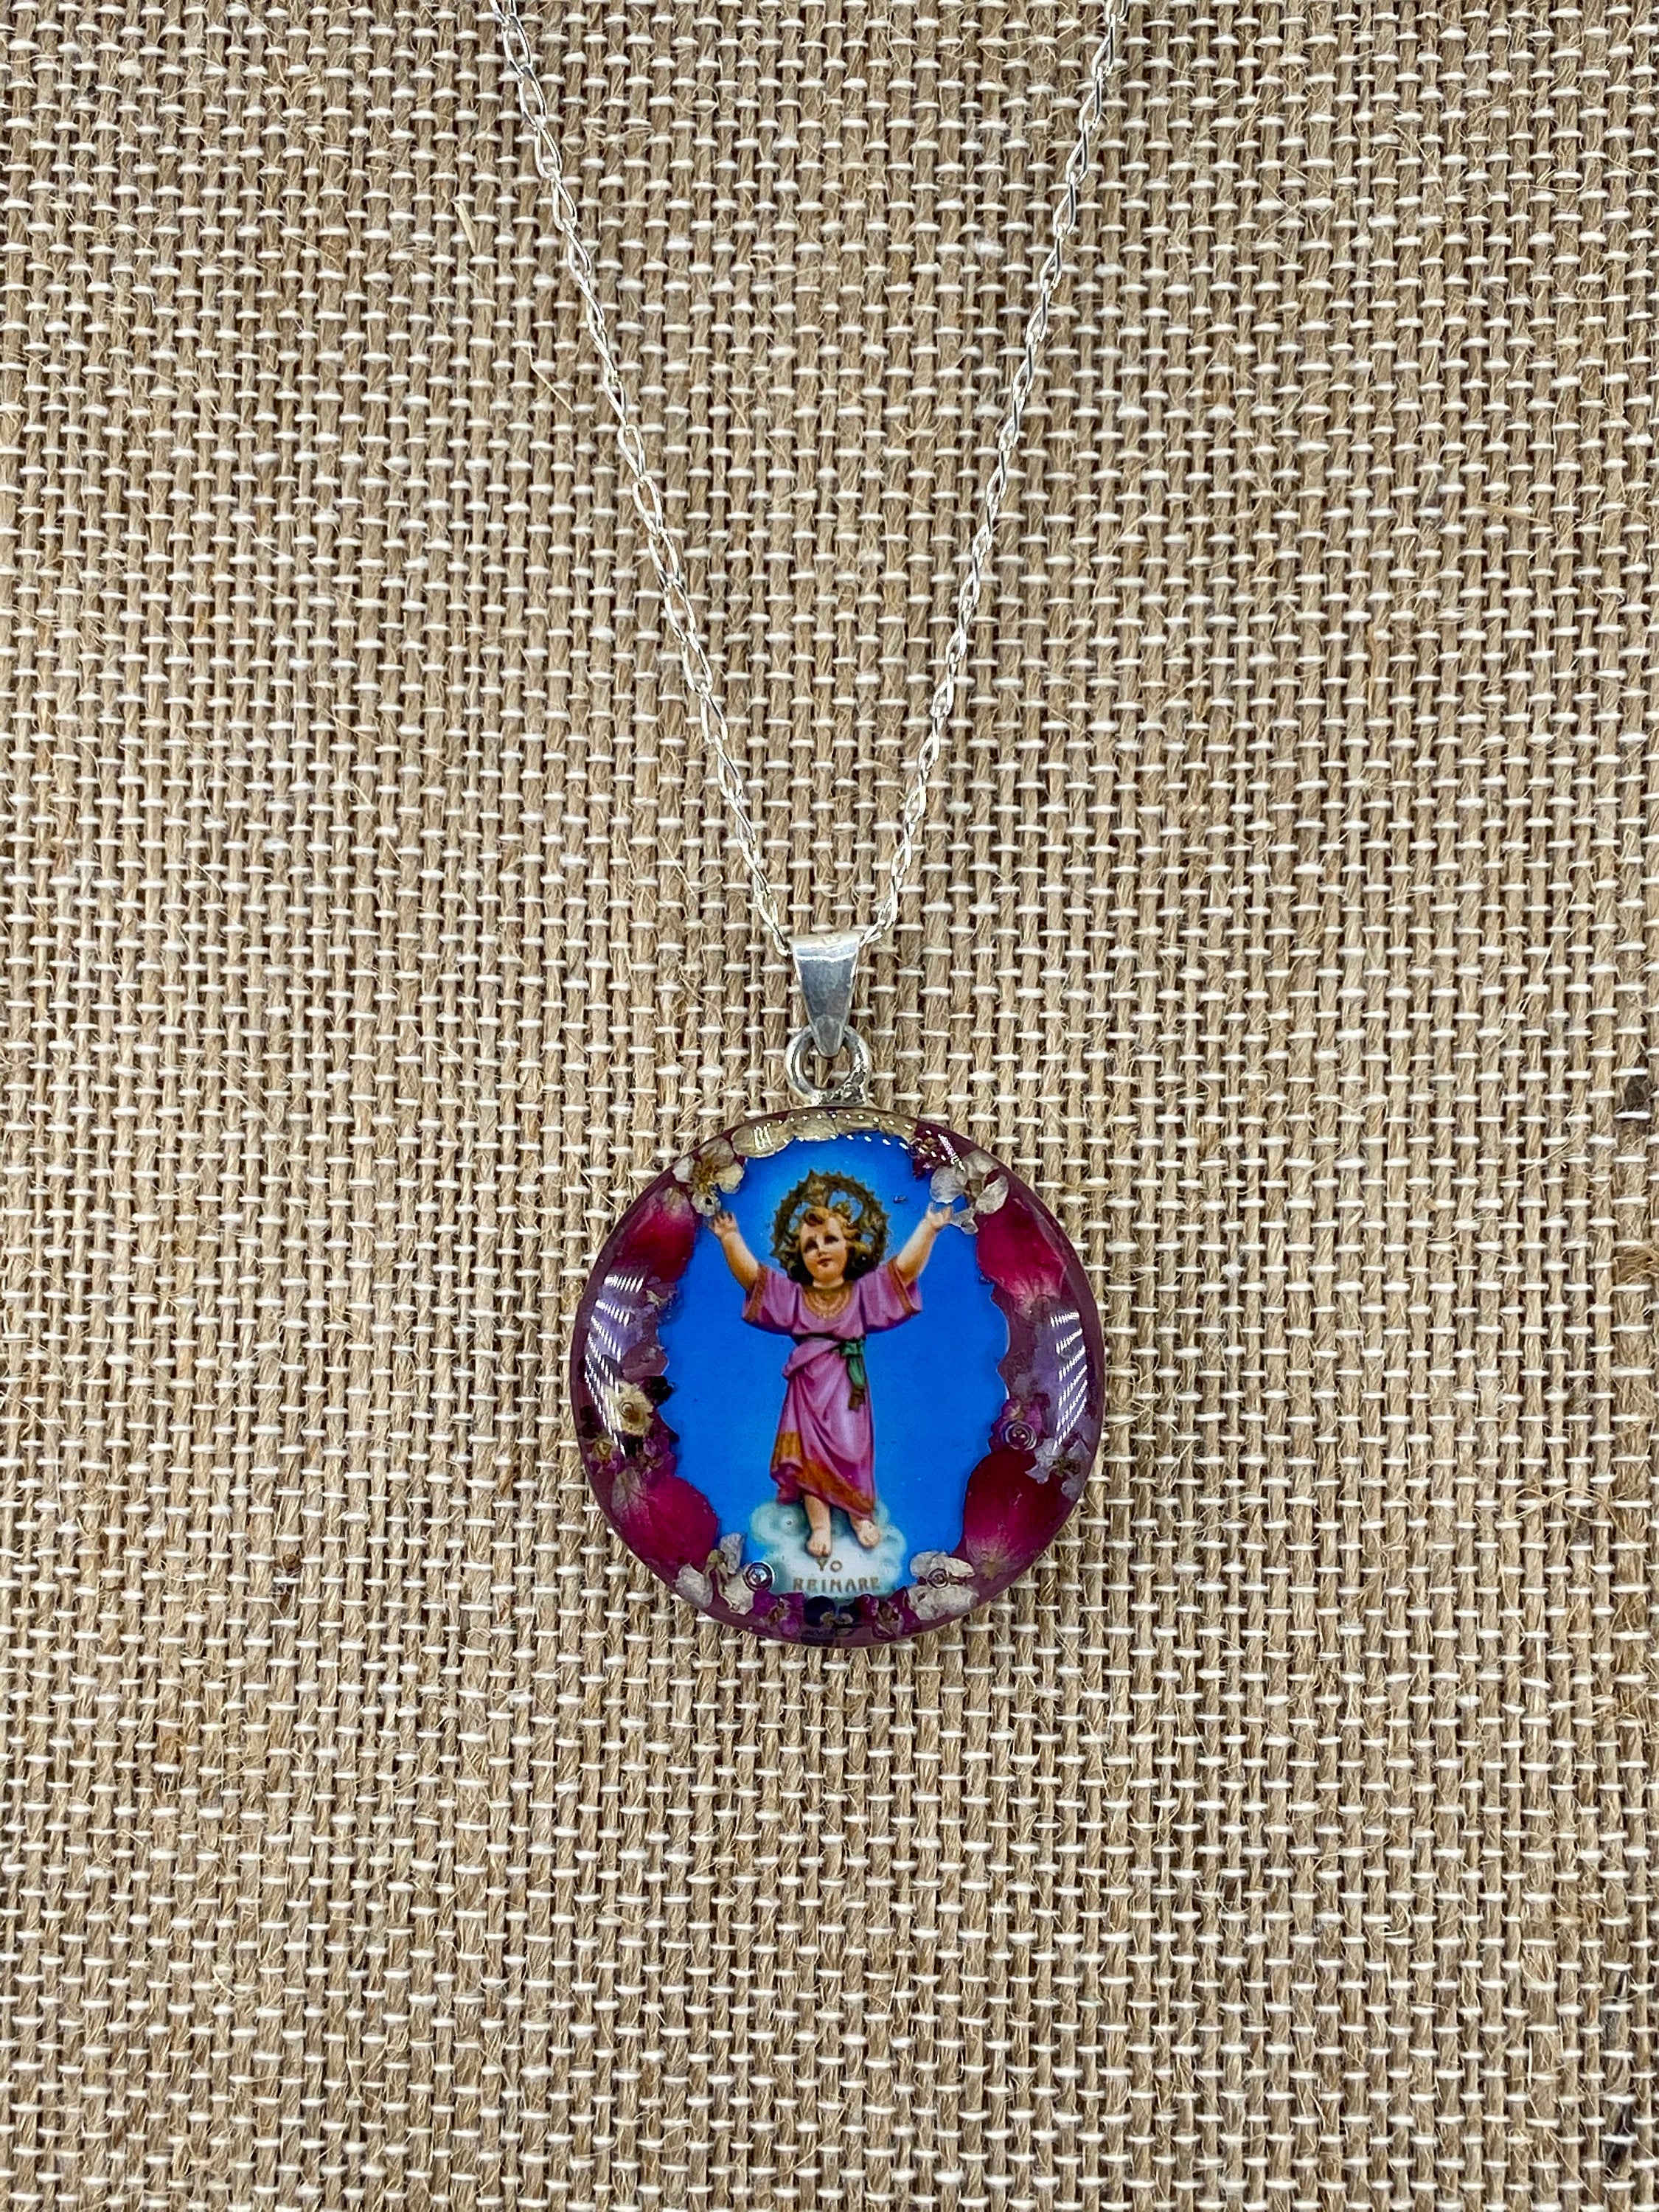 Divine Child / Divino Nino Jesus - Guadalupe Collection